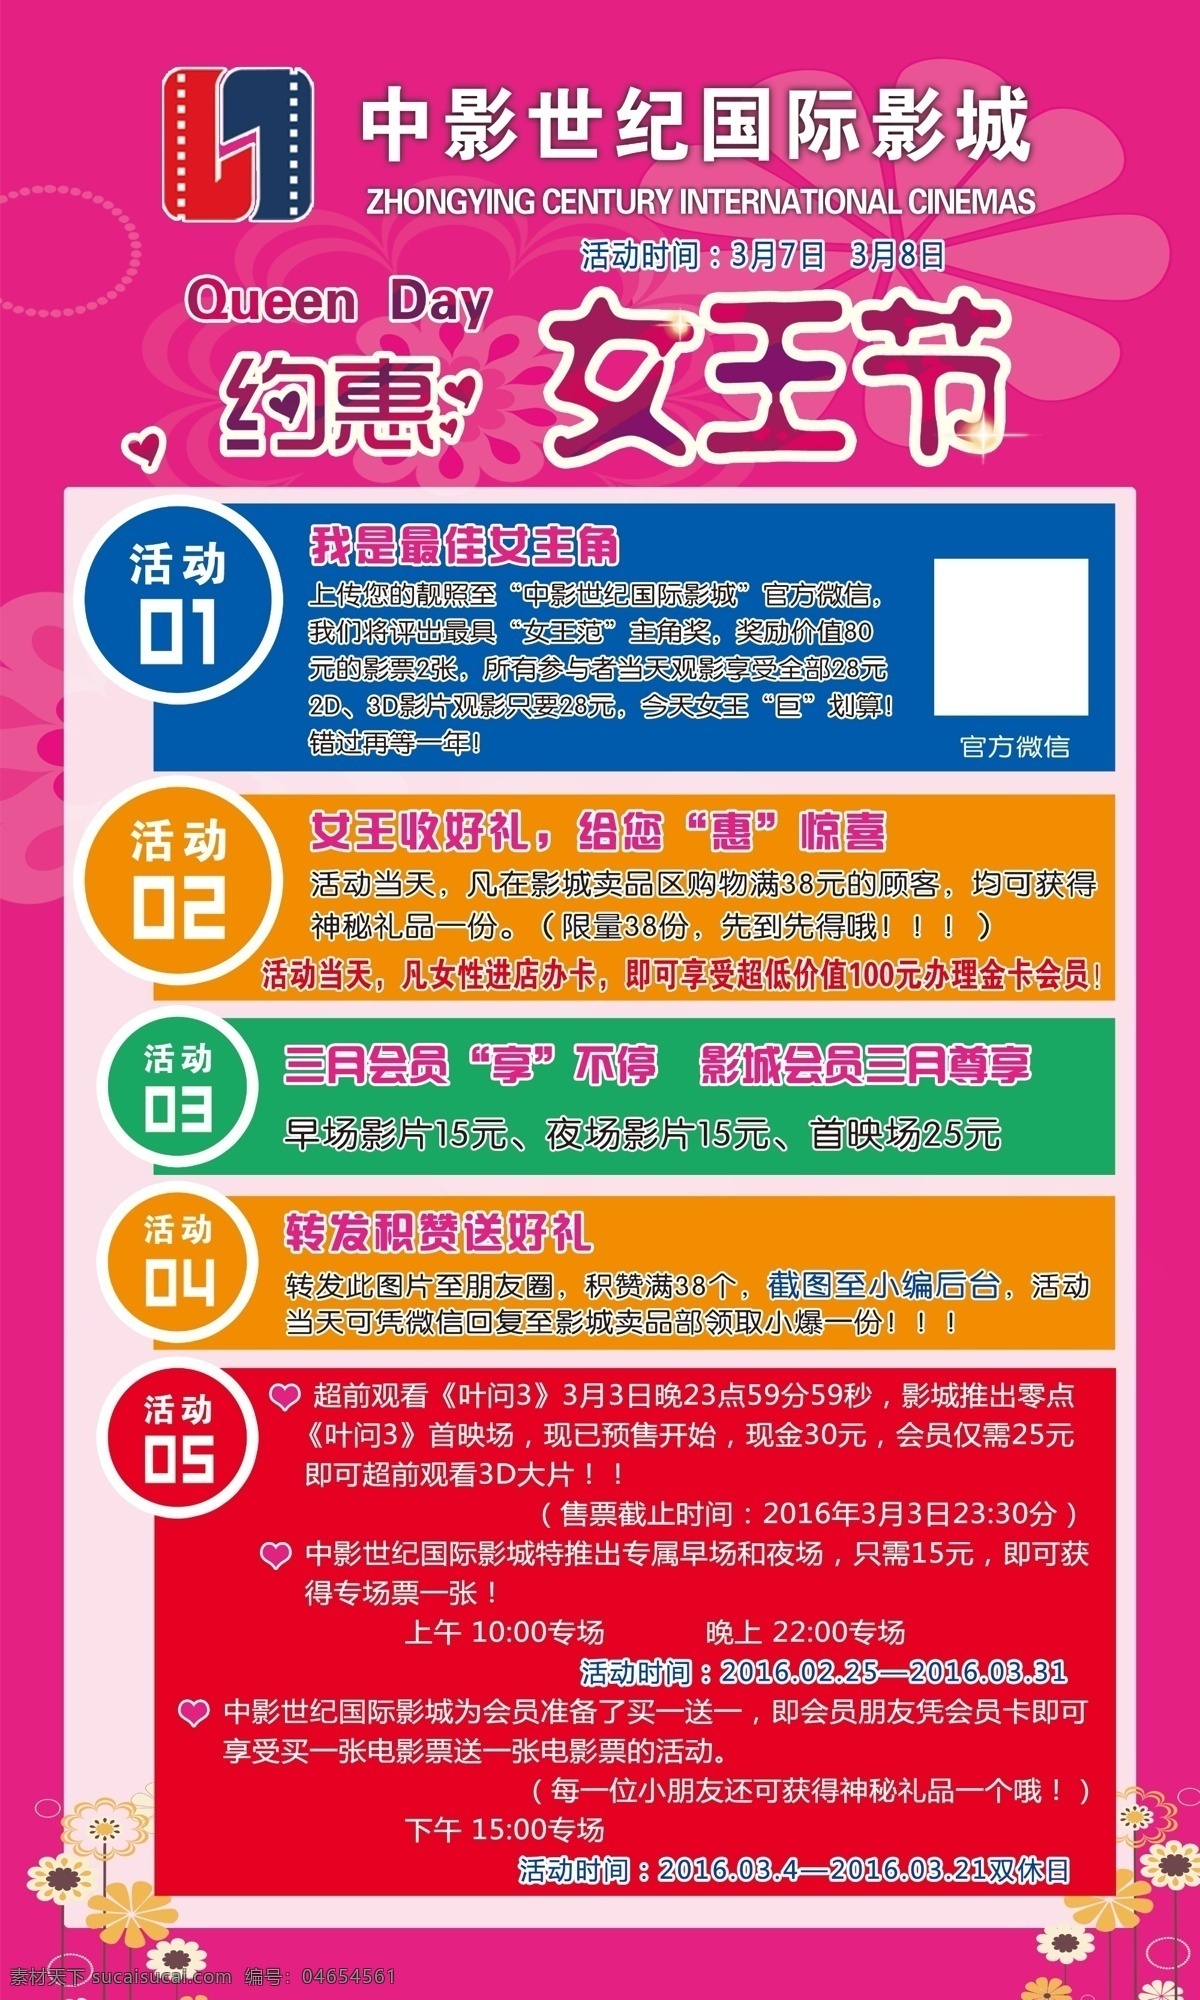 中影 国际 影城 约 惠女 王 节 活动 世纪 约惠女王节 活动内容 紫色